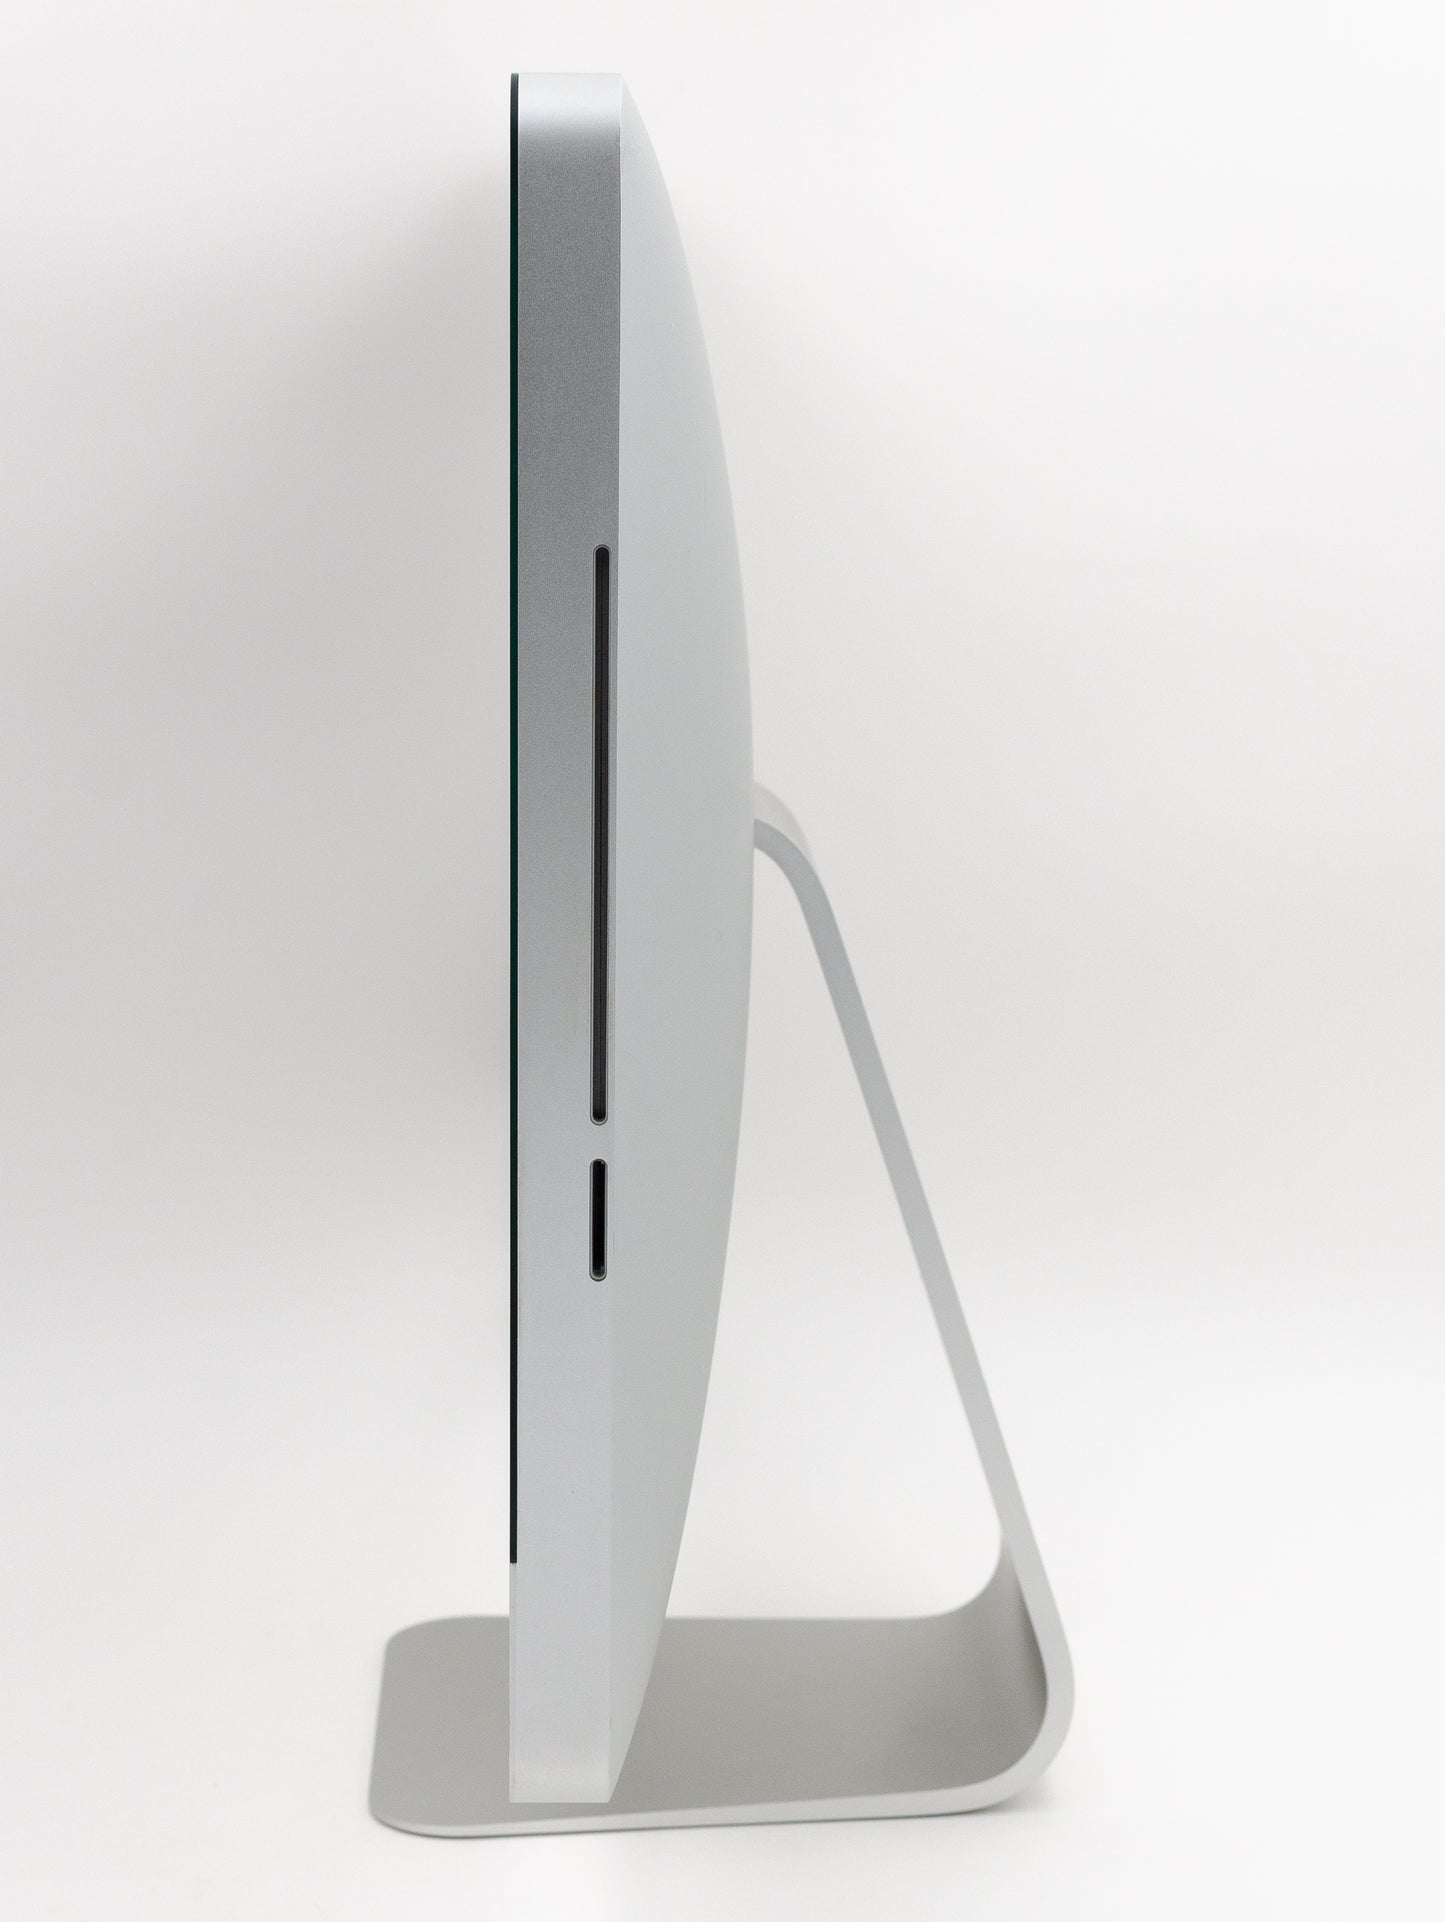 apple-mid-2011-21.5-inch-imac-a1311-aluminum-qci5 - 2.5ghz, 12gb ram, hd 6750m - 512mb gpu-3